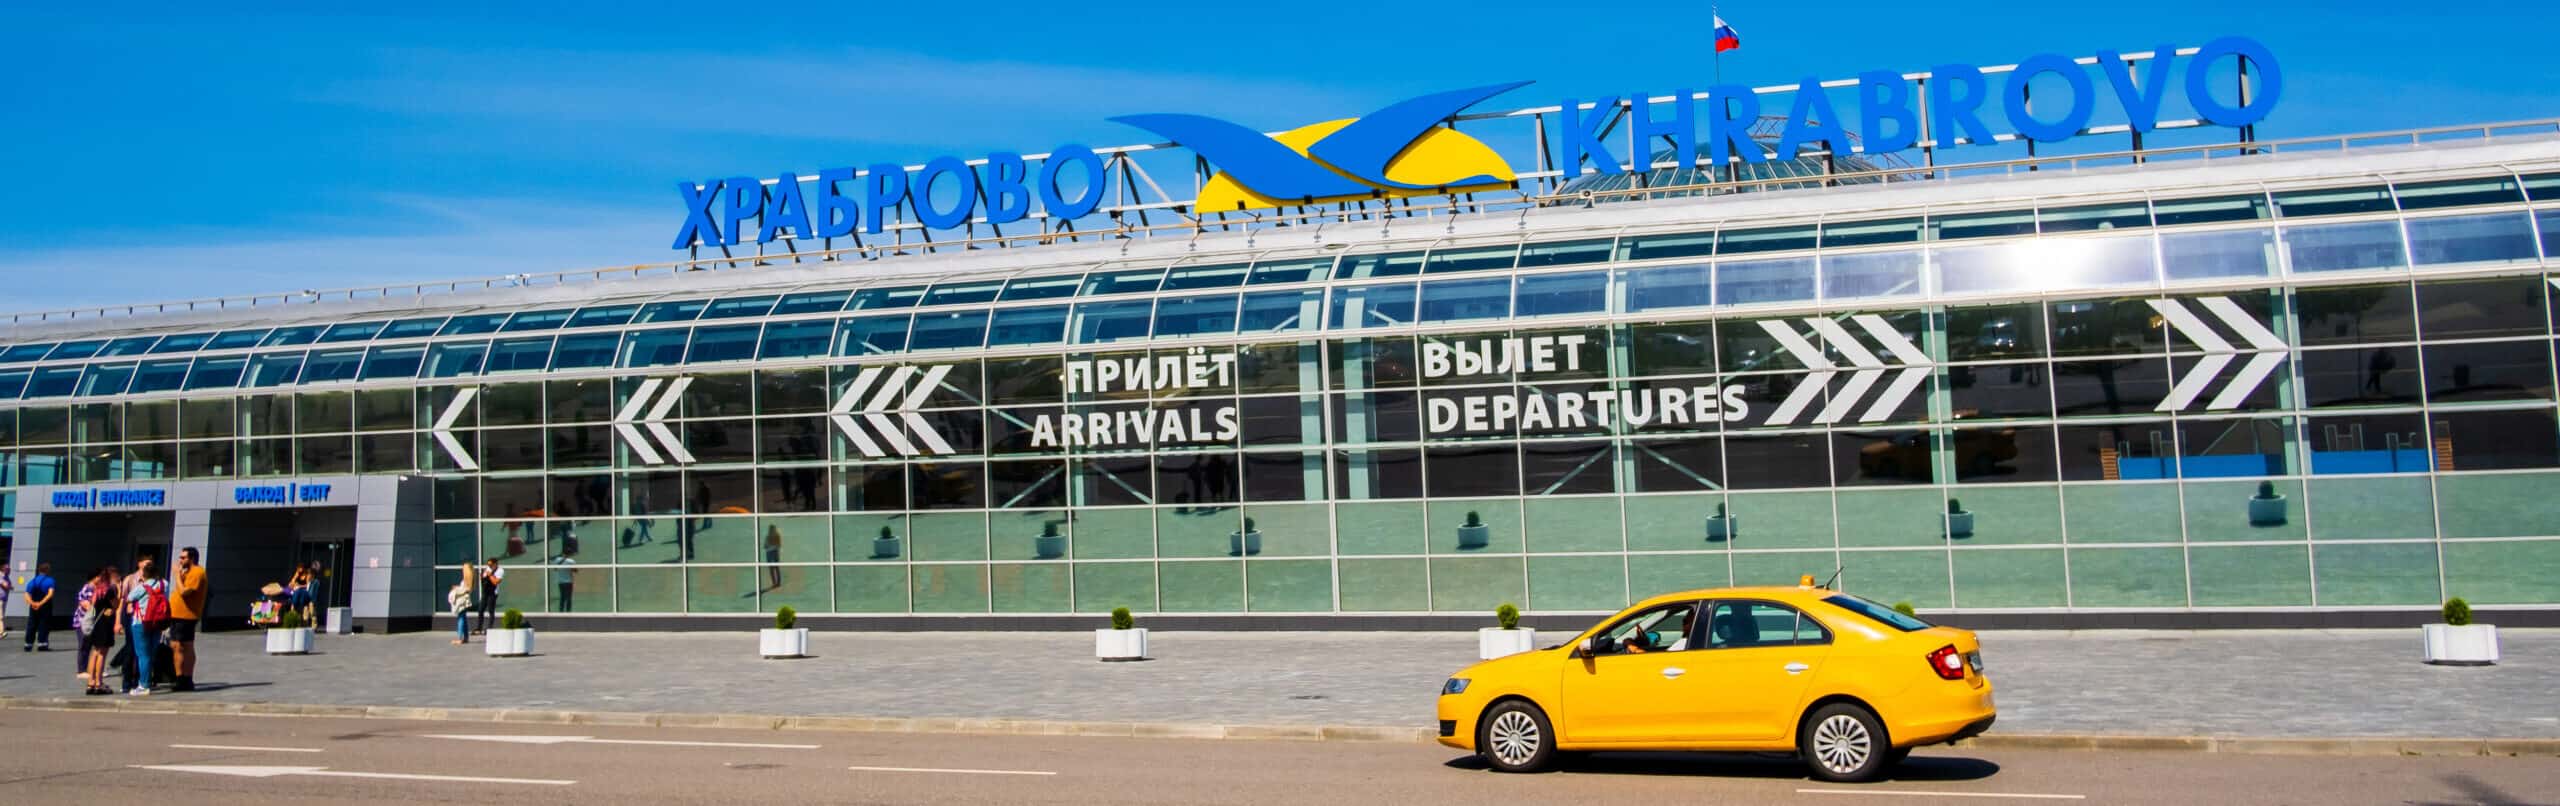 Flughafen Kaliningrad